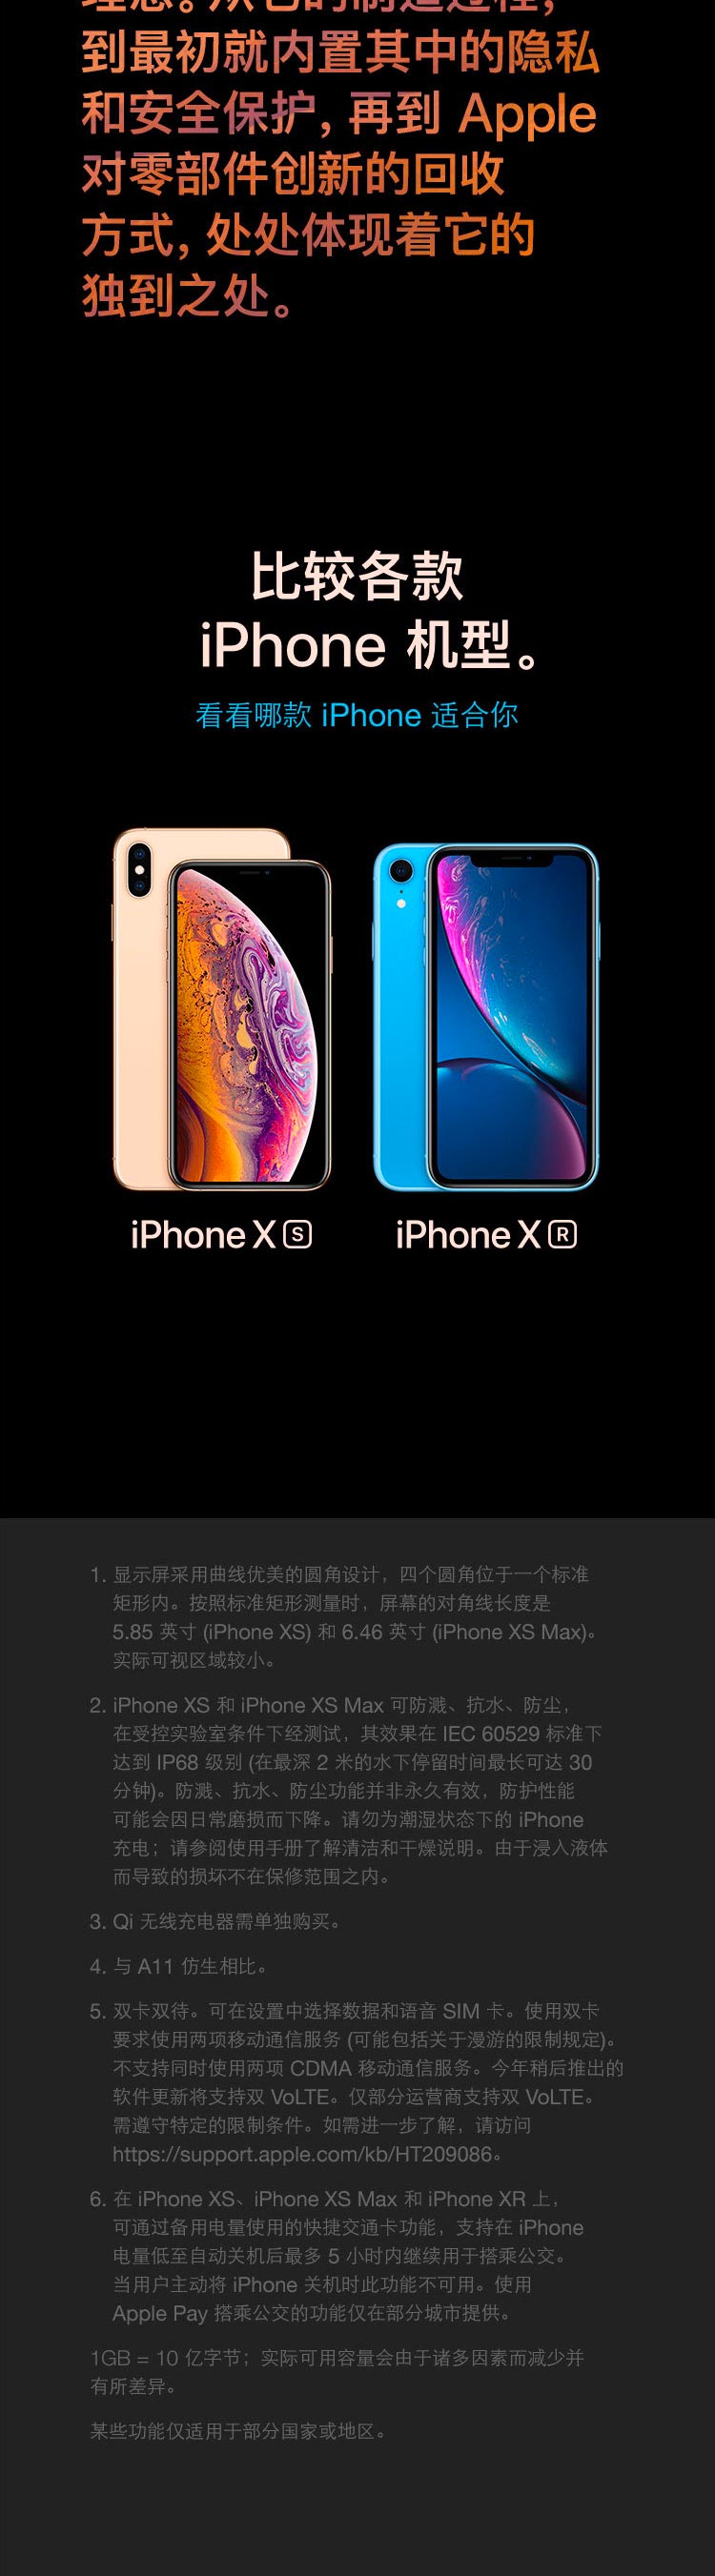 中山手机网 苹果(apple) iphonexs手机专卖